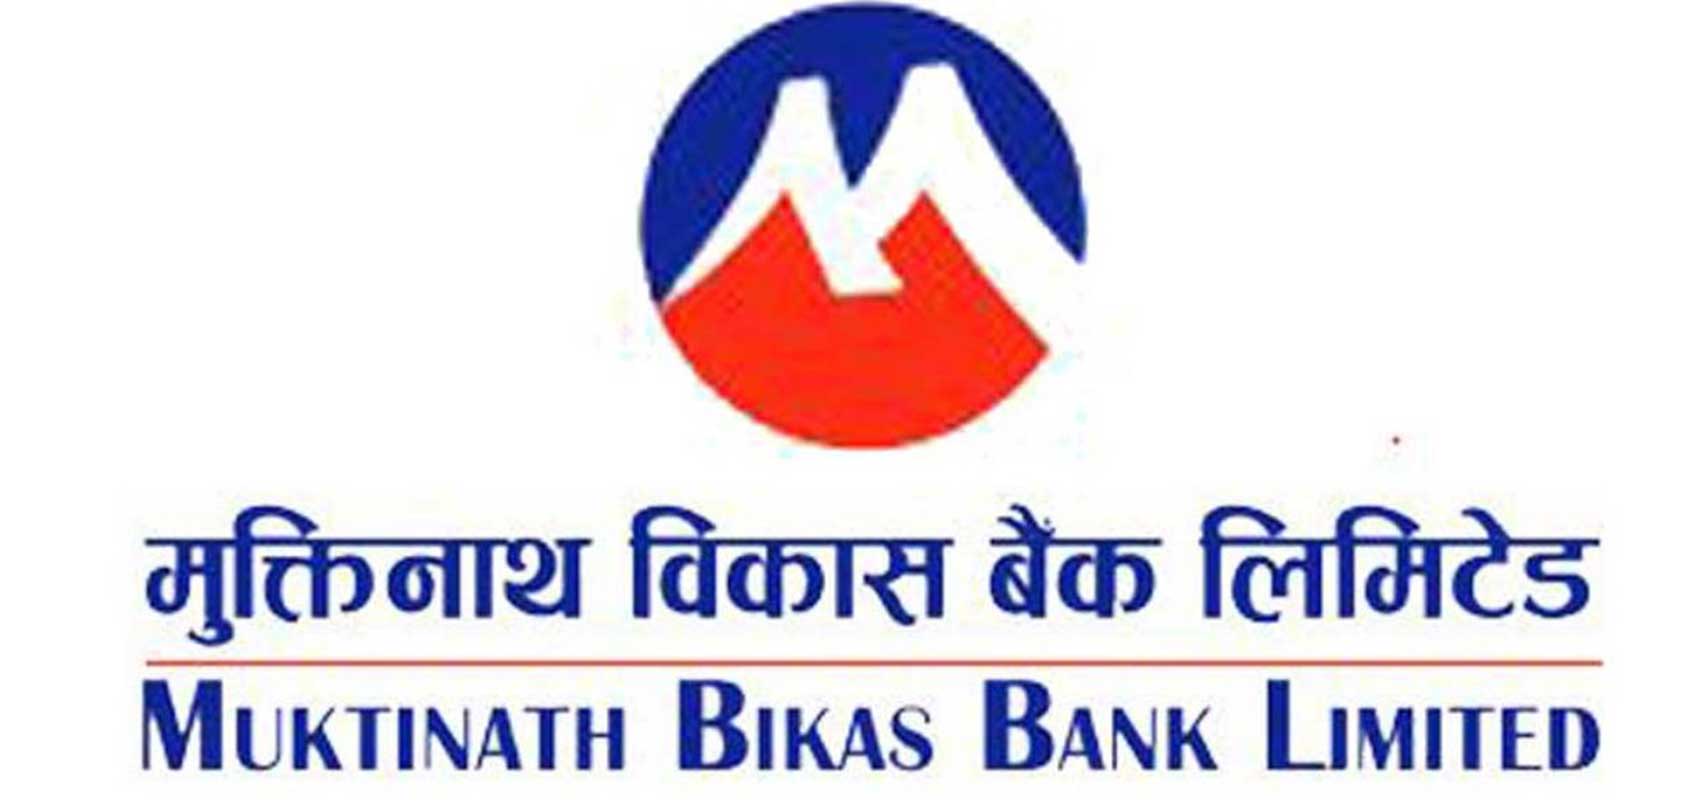 मुक्तिनाथ विकास बैंक र नेपाल क्रेडिट एण्ड कमर्स बीच सहकार्य